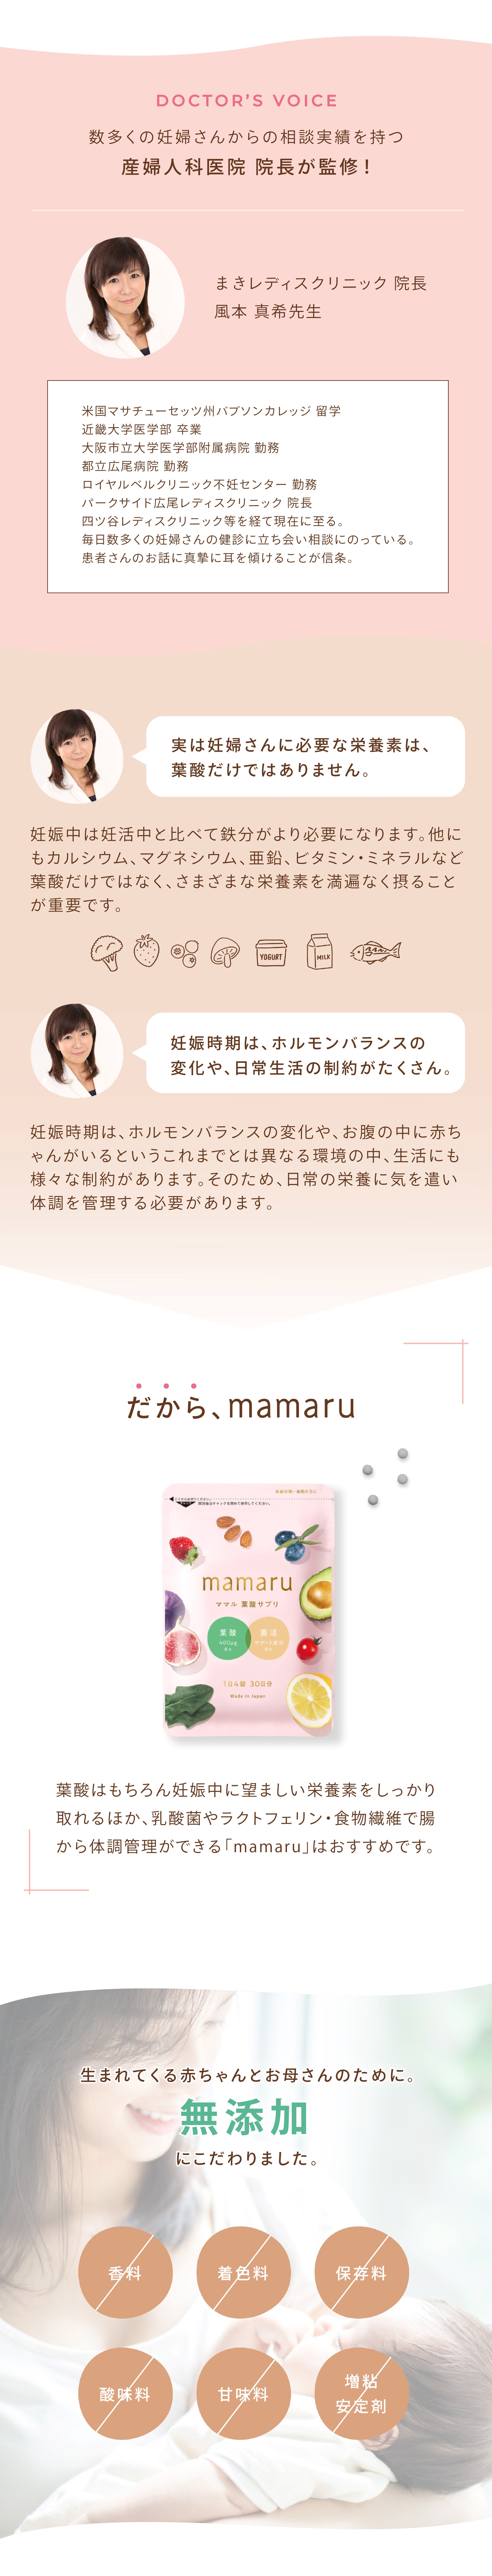 葉酸サプリ マタニティ mamaru 1袋 1か月分 妊娠中サプリ 妊娠中 葉酸